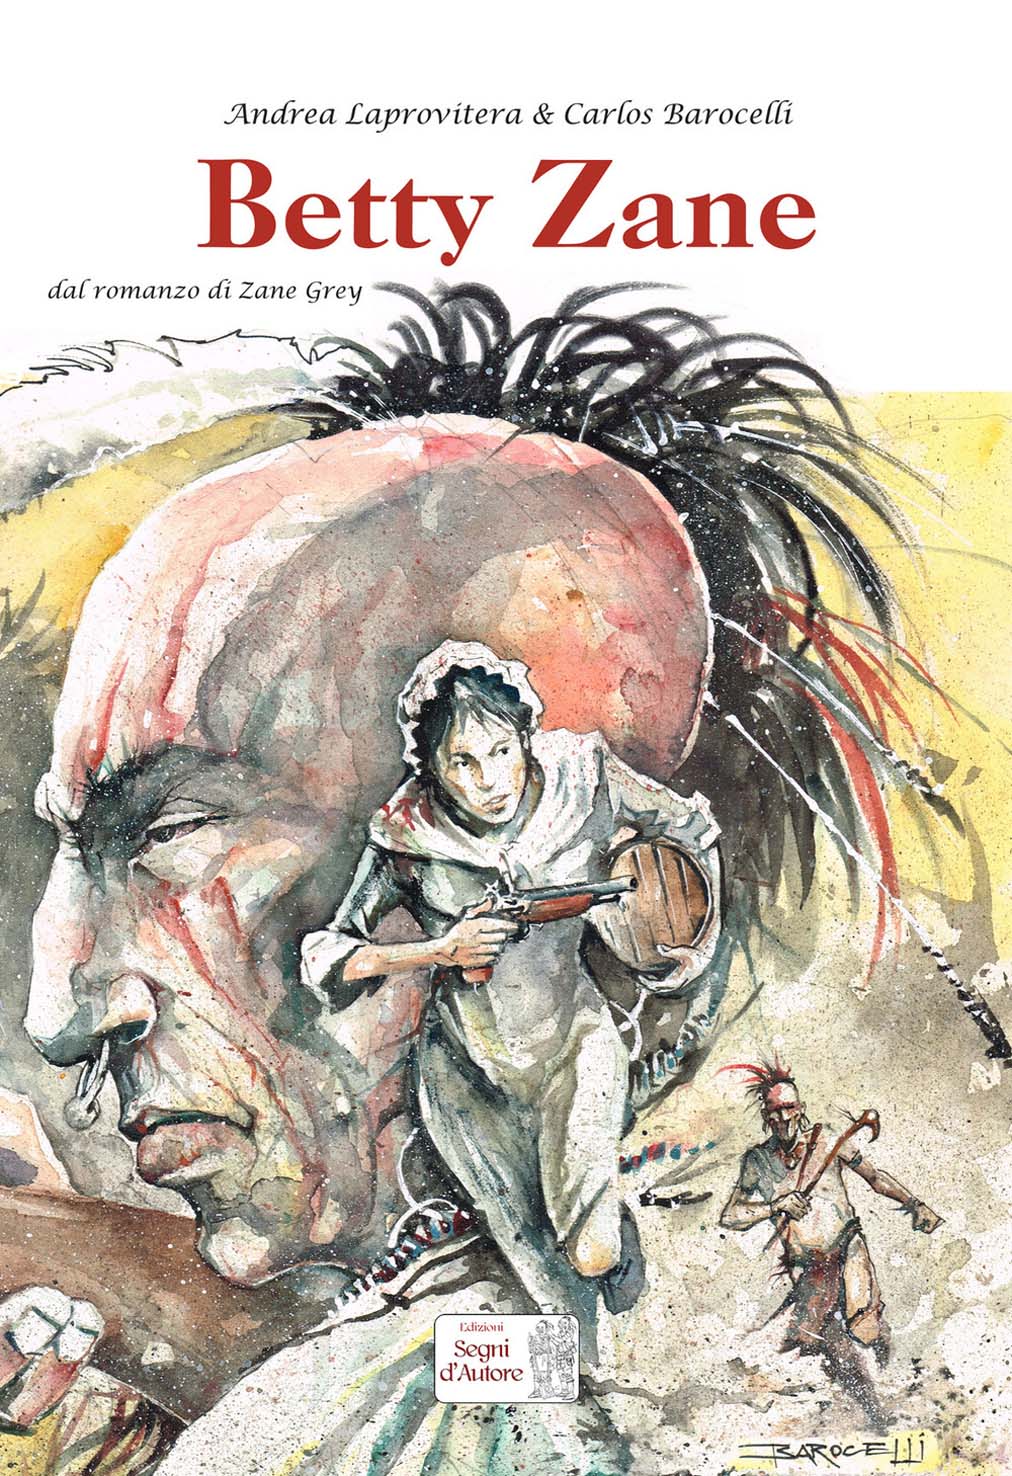 Libri Andrea Laprovitera / Carlos Barocelli - Betty Zane NUOVO SIGILLATO, EDIZIONE DEL 12/10/2018 SUBITO DISPONIBILE